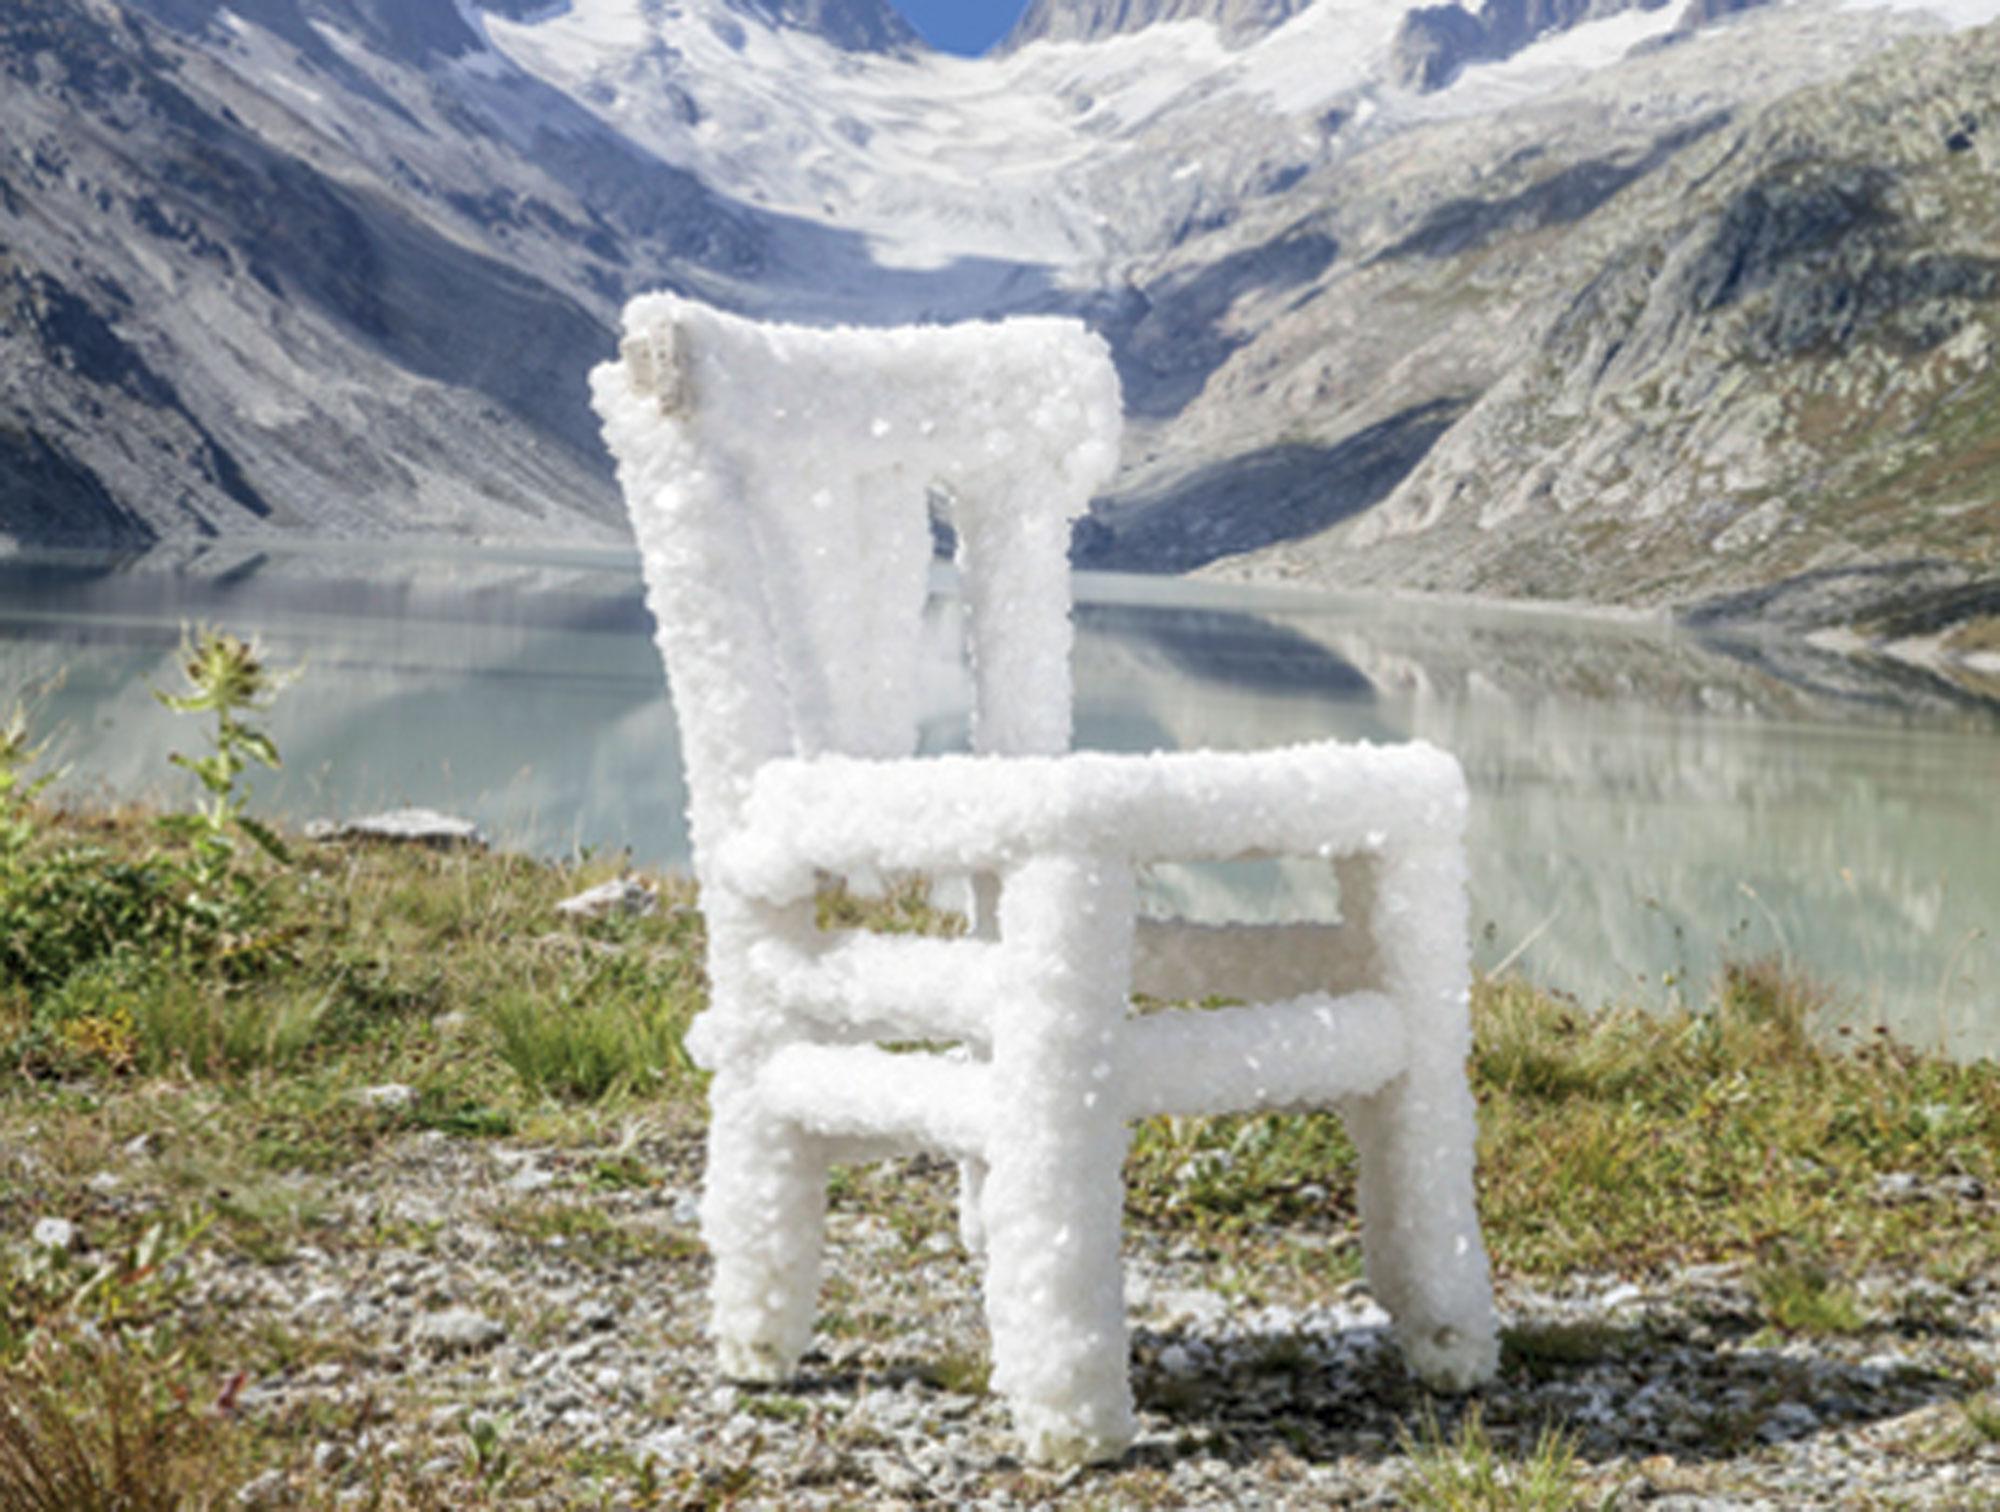 La chaise recouverte de sel de David Brülhart. [Musée de Charmey - David Brülhart]